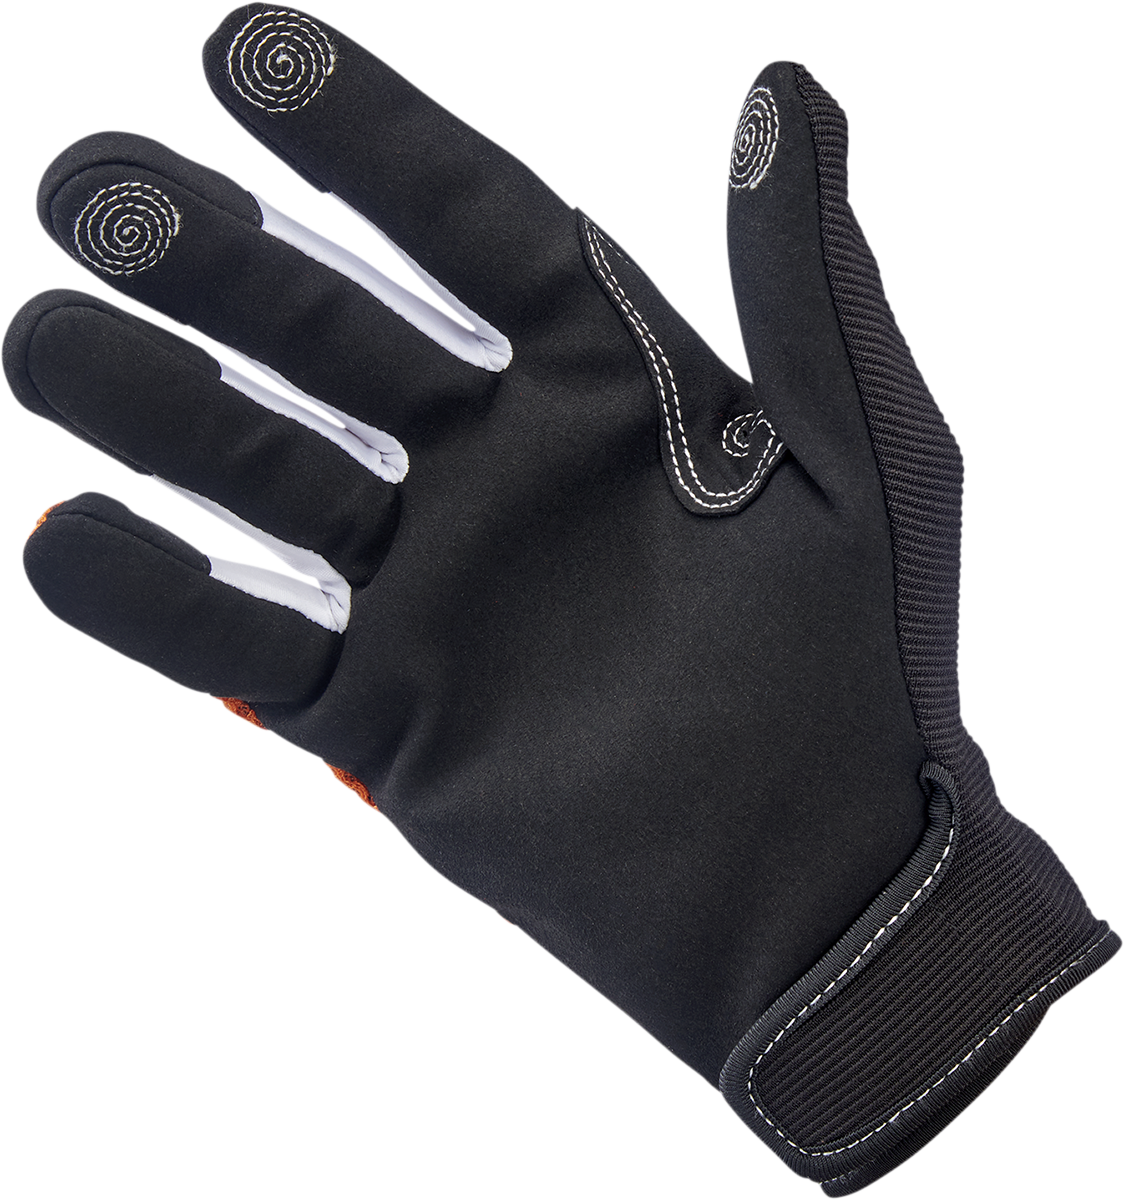 BILTWELL Anza Gloves - Orange - XL 1507-0601-005